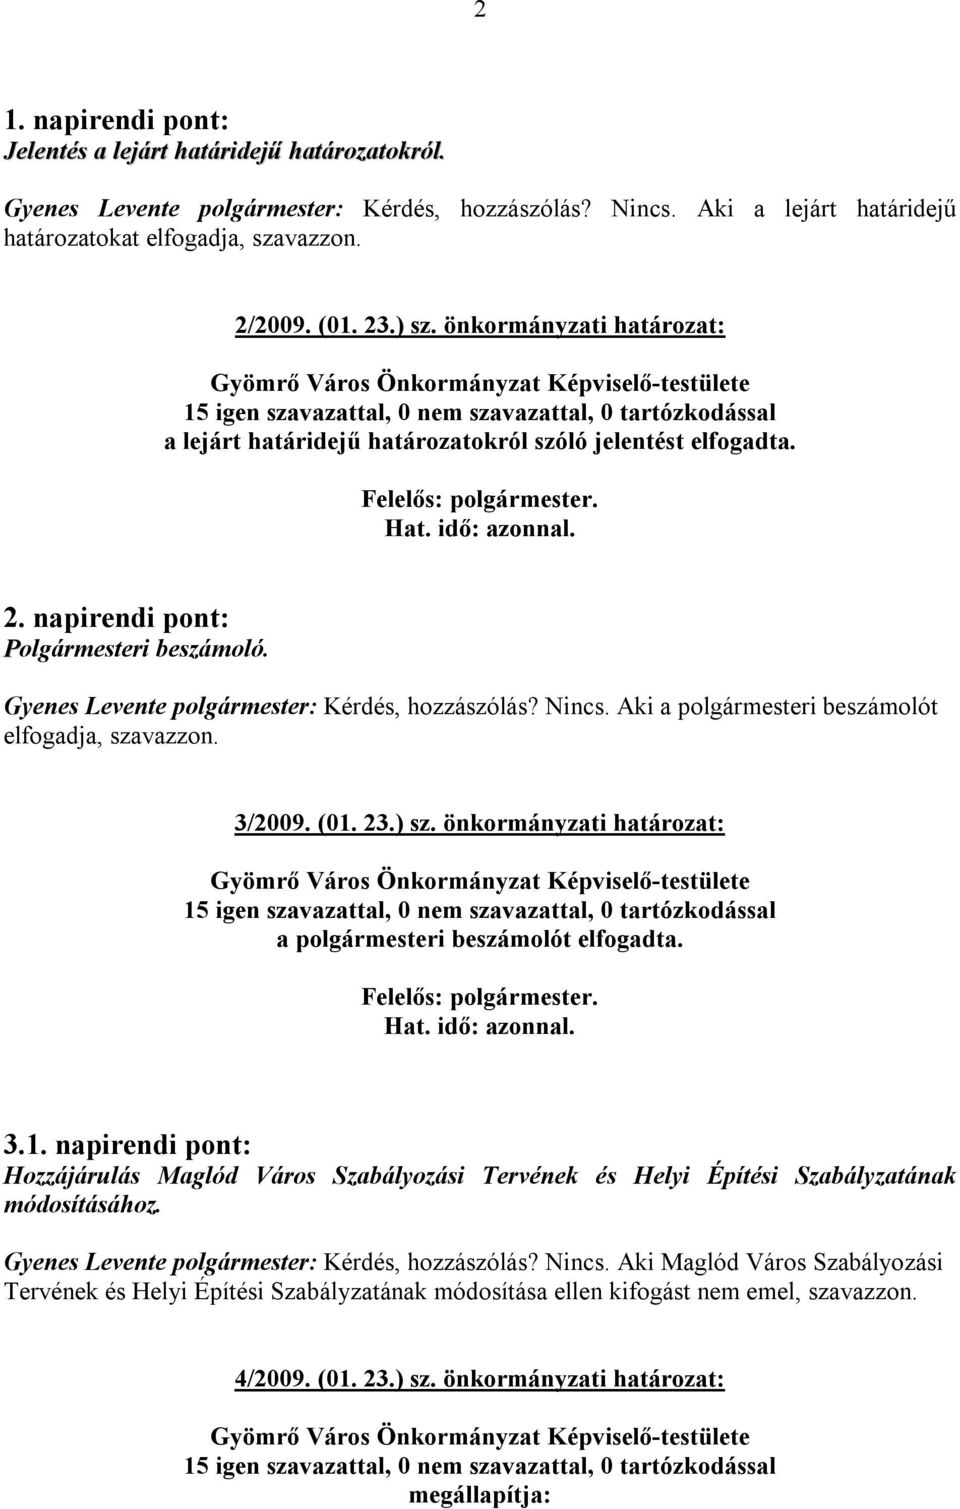 Aki a polgármesteri beszámolót elfogadja, szavazzon. 3/2009. (01. 23.) sz. önkormányzati határozat: a polgármesteri beszámolót elfogadta. 3.1. napirendi pont: Hozzájárulás Maglód Város Szabályozási Tervének és Helyi Építési Szabályzatának módosításához.